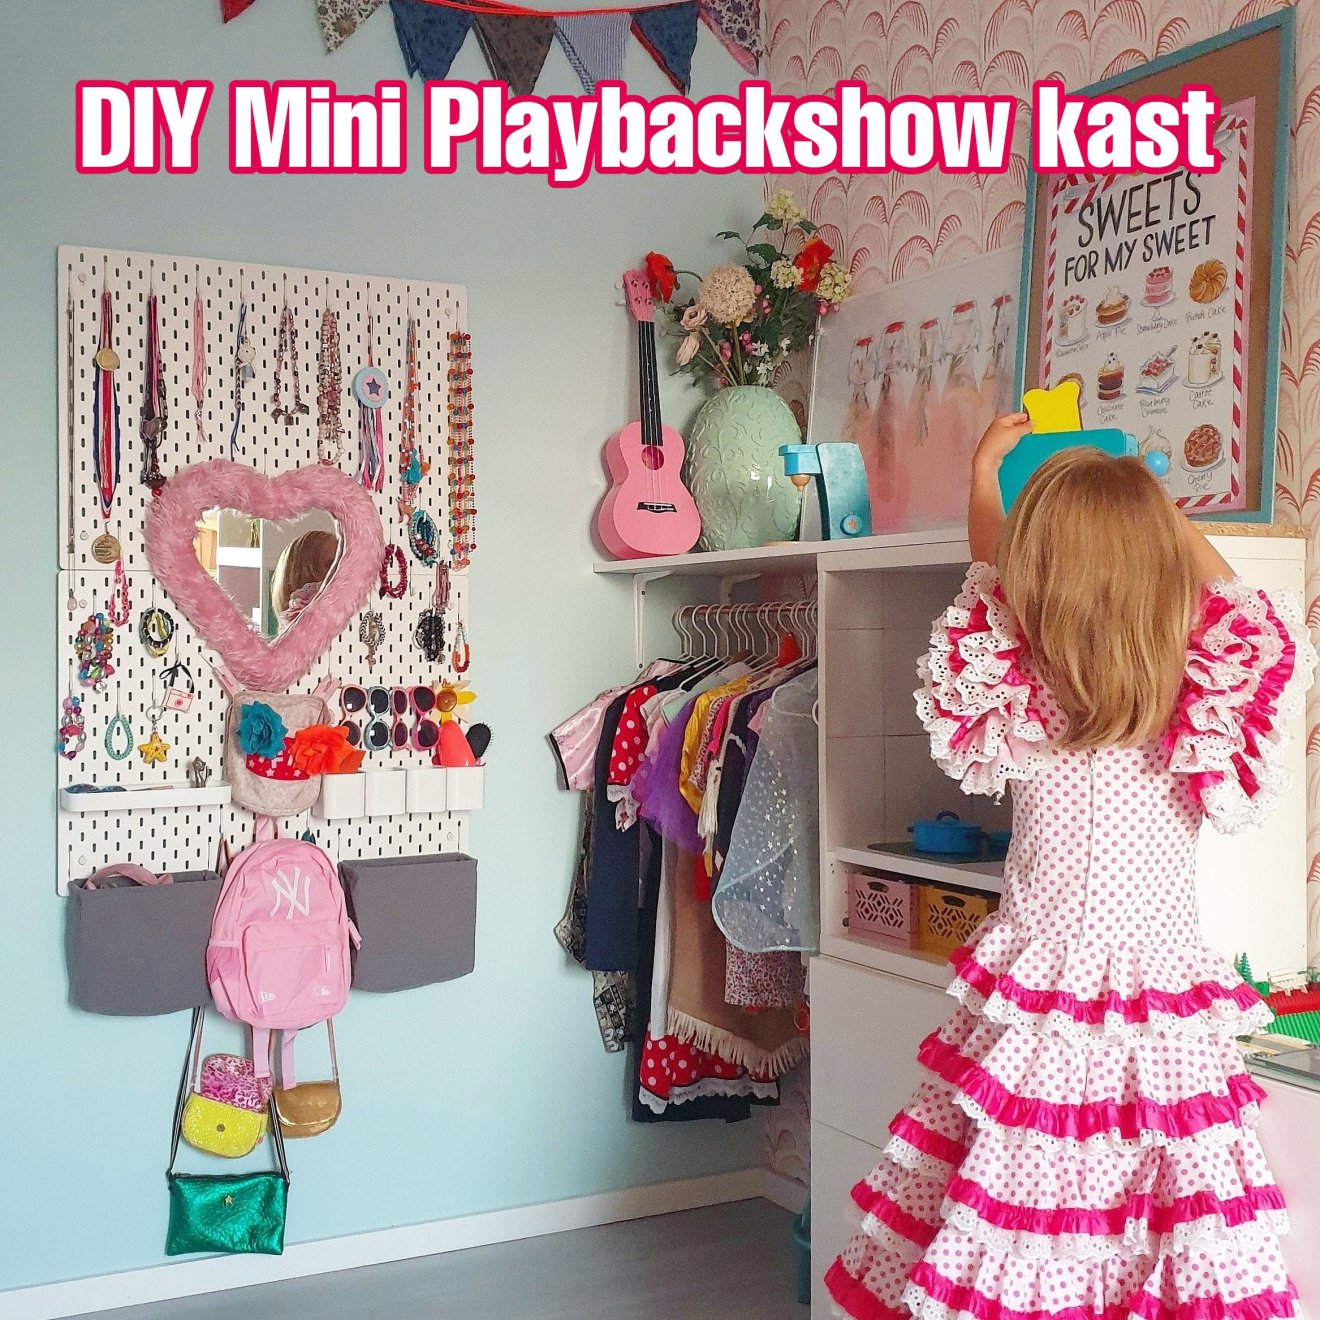 Kinderkamer IKEA hack: Mini Playbackshow kast voor kinderkamer. Vond jij de kledingkast van de Mini Playbackshow vroeger ook zo fascinerend? Zo maak je zelf een Mini Playbackshow kast voor de kinderkamer. 